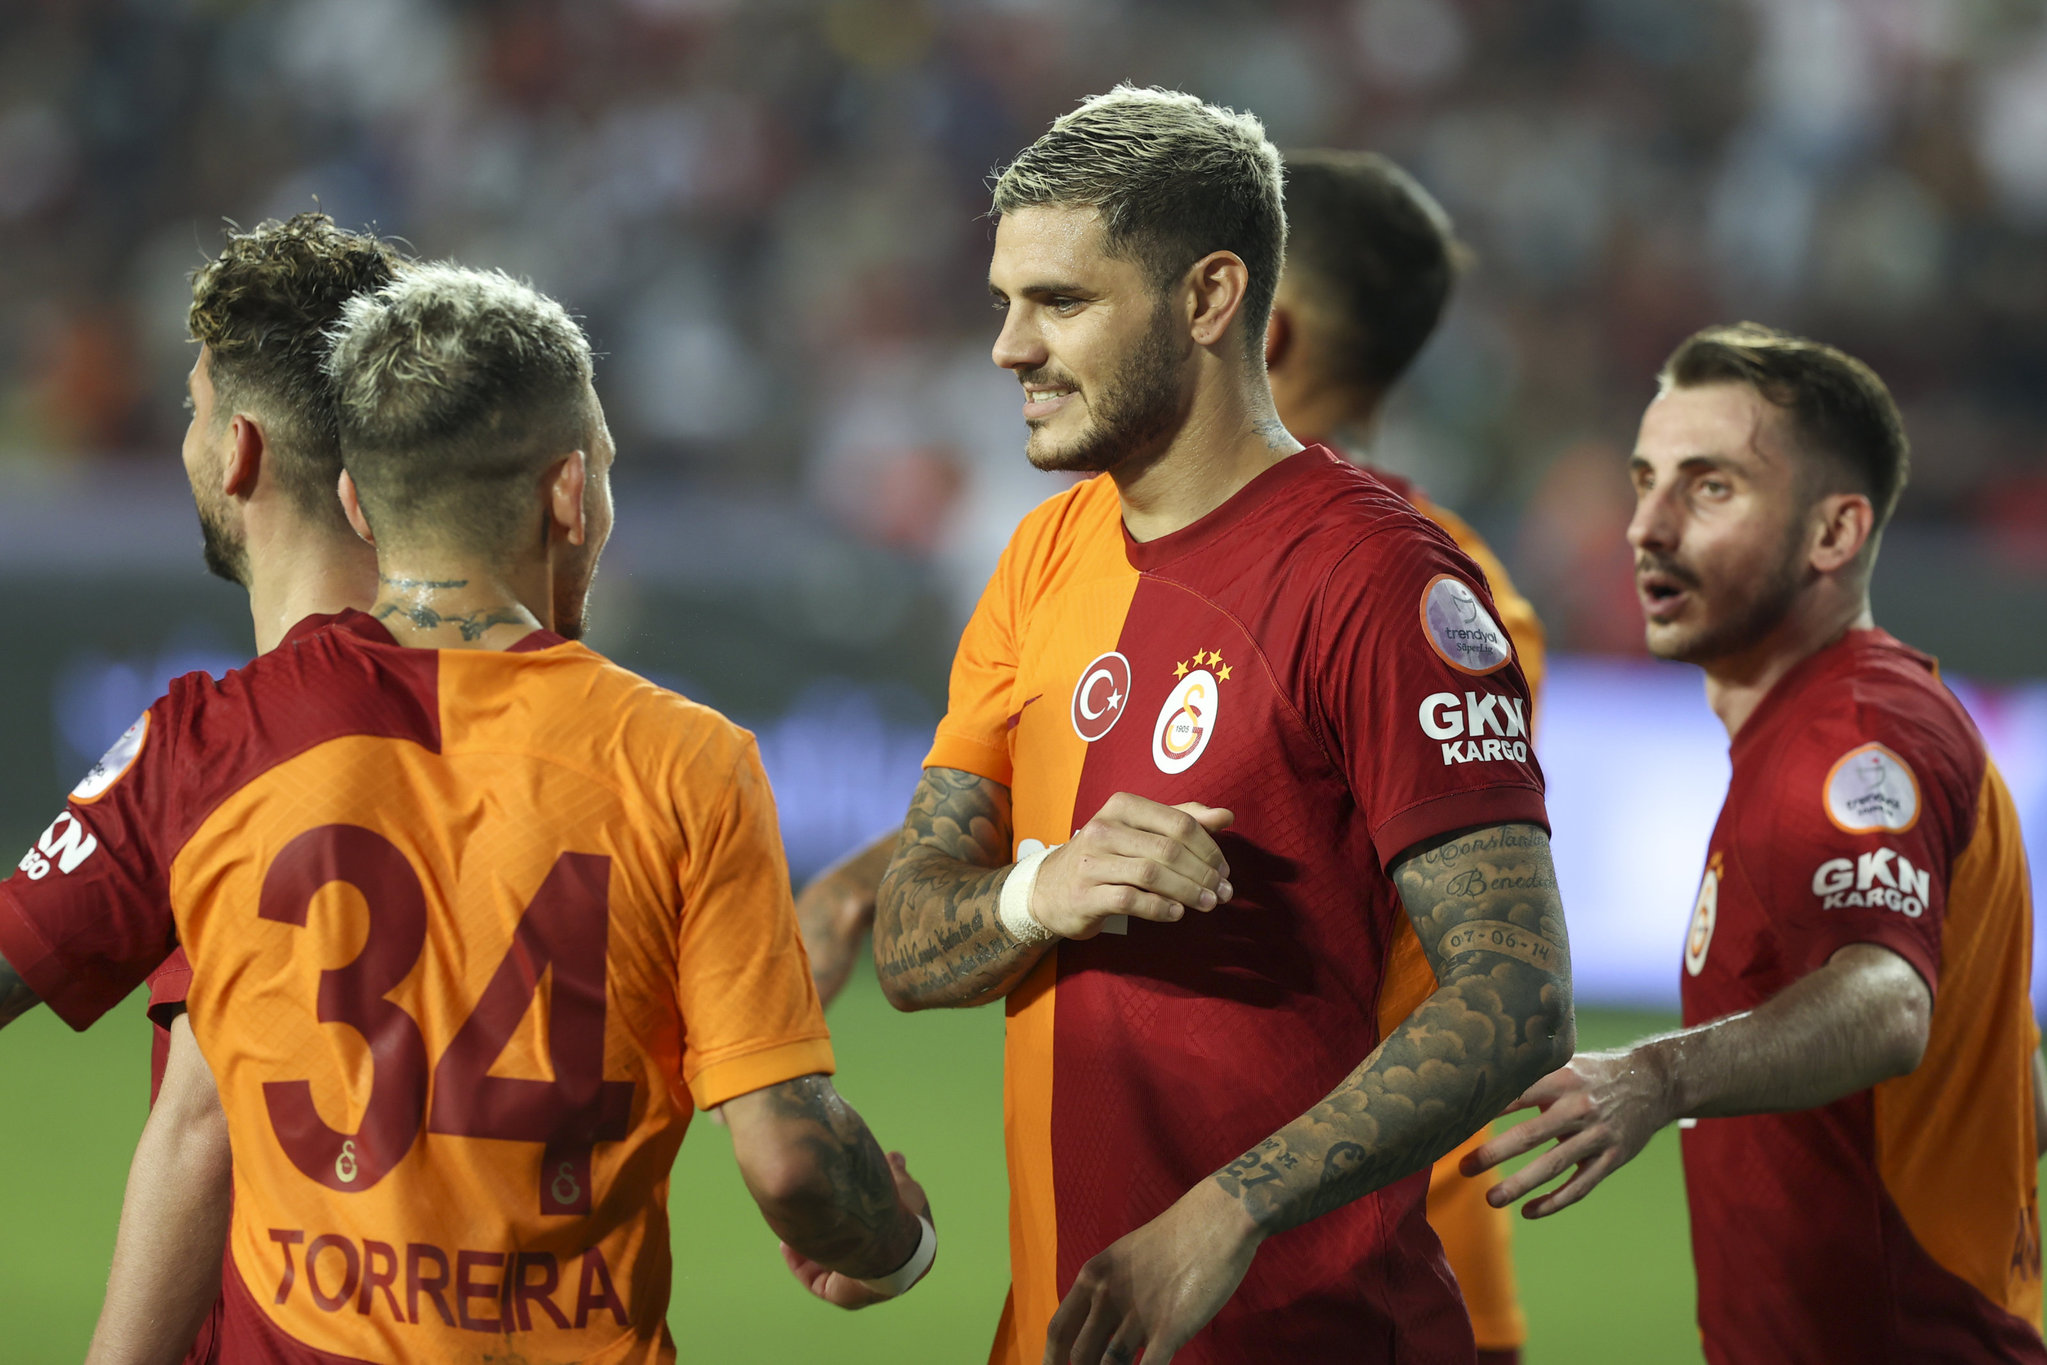 TRANSFER HABERİ: Galatasaray Paul Pogba’dan vazgeçmiyor! Taraftarları heyecanlandıran gelişme